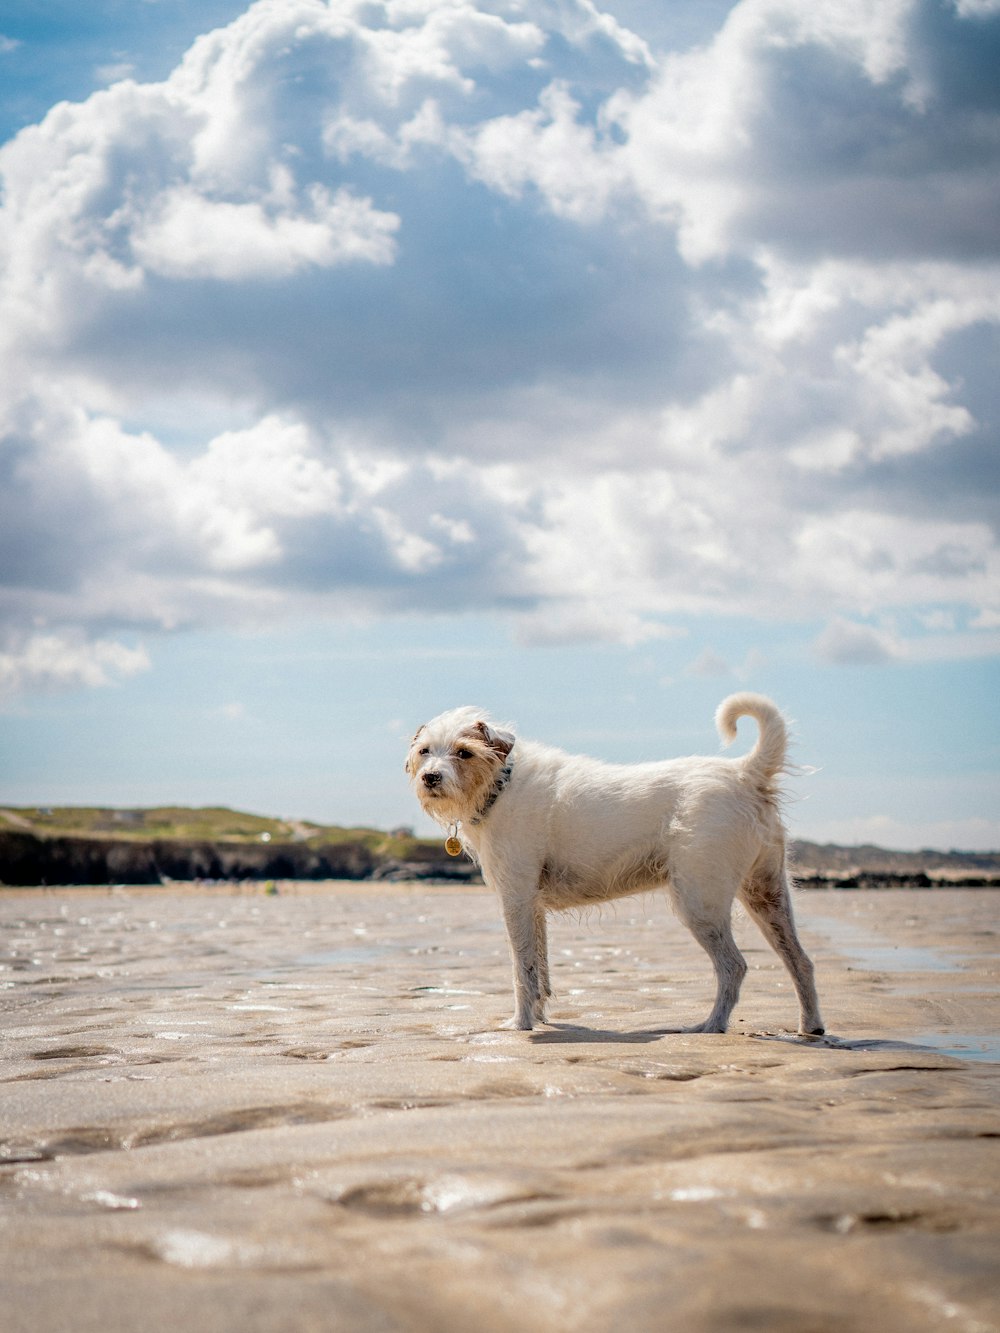 weißer kurzhaariger mittelgroßer Hund auf braunem Sand unter weißen Wolken und blauem Himmel während